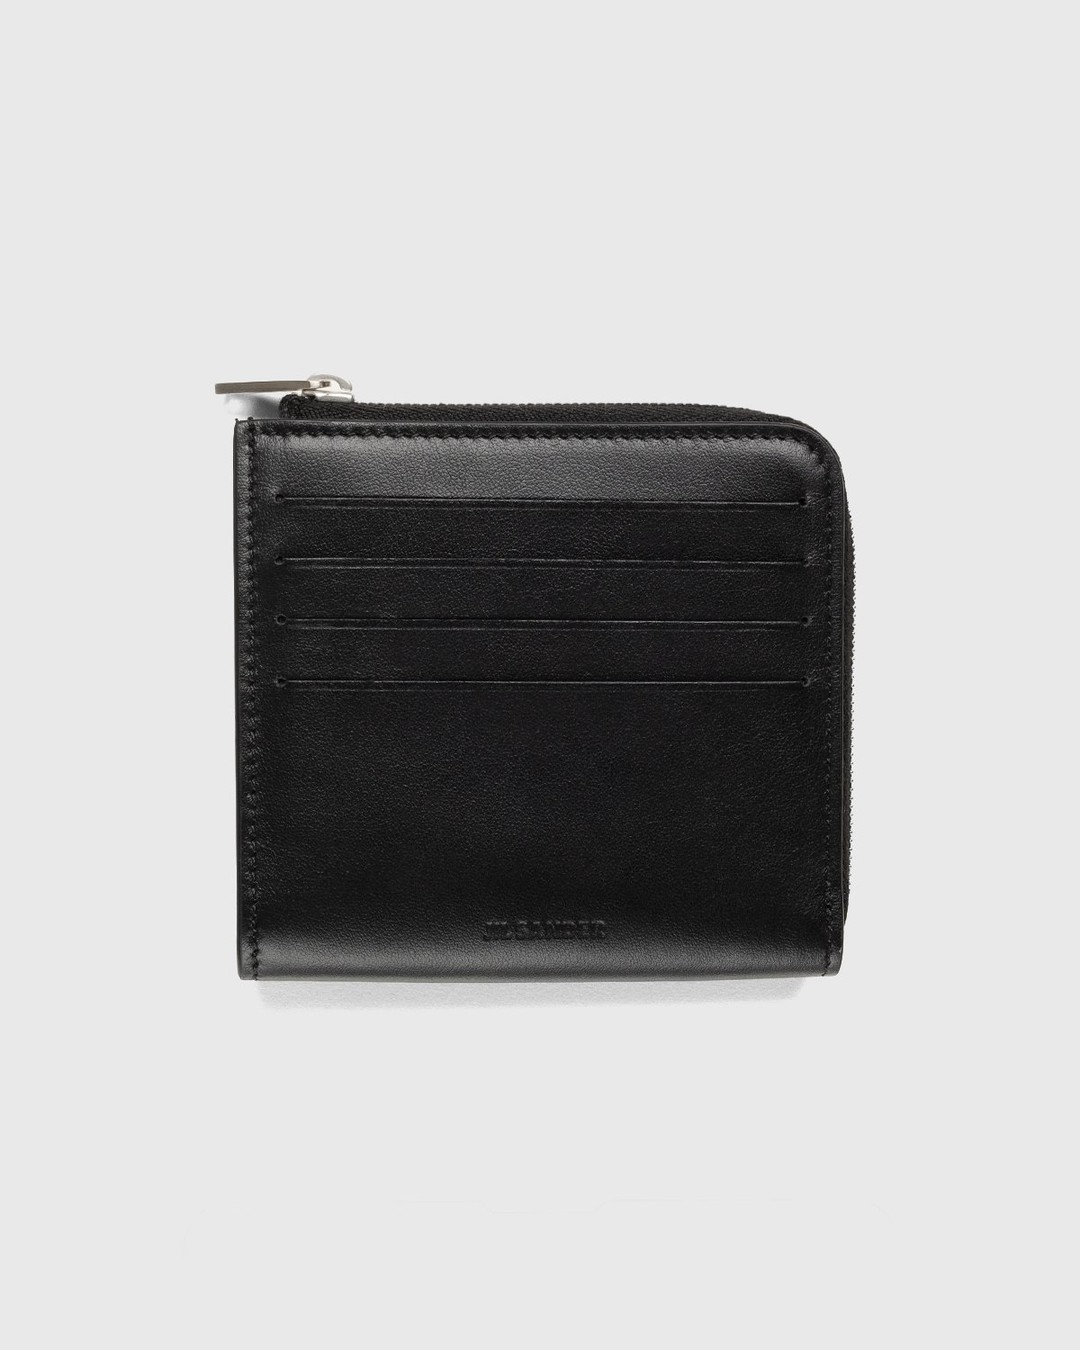 Jil Sander – Leather Card Wallet Black - Wallets - Black - Image 1